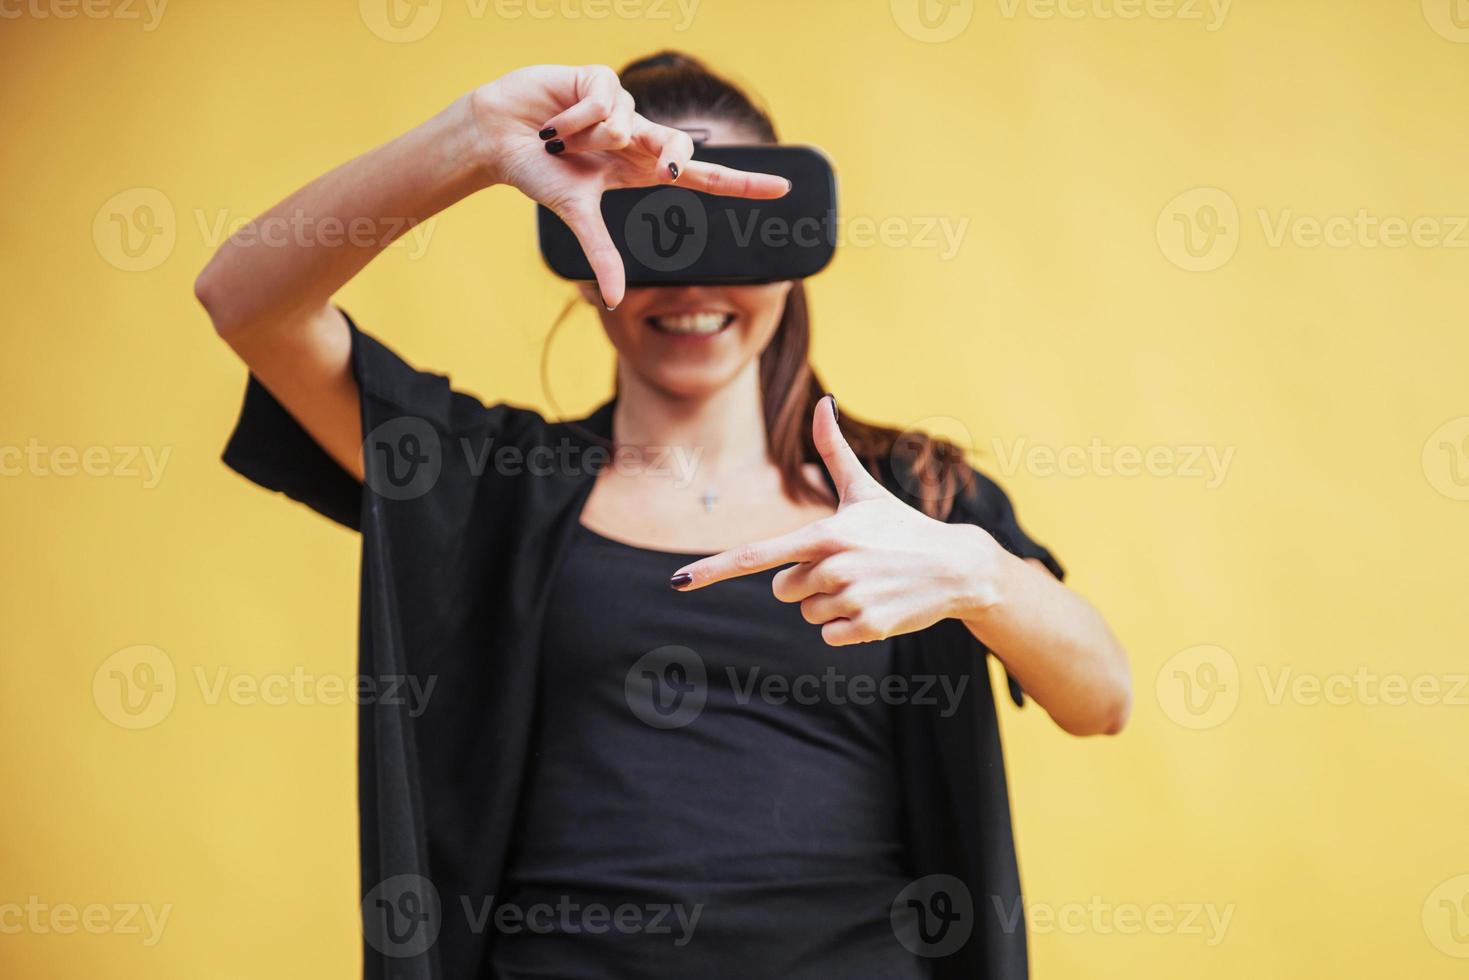 la donna felice fa esperienza dell'utilizzo delle cuffie per realtà virtuale vr-glasses foto